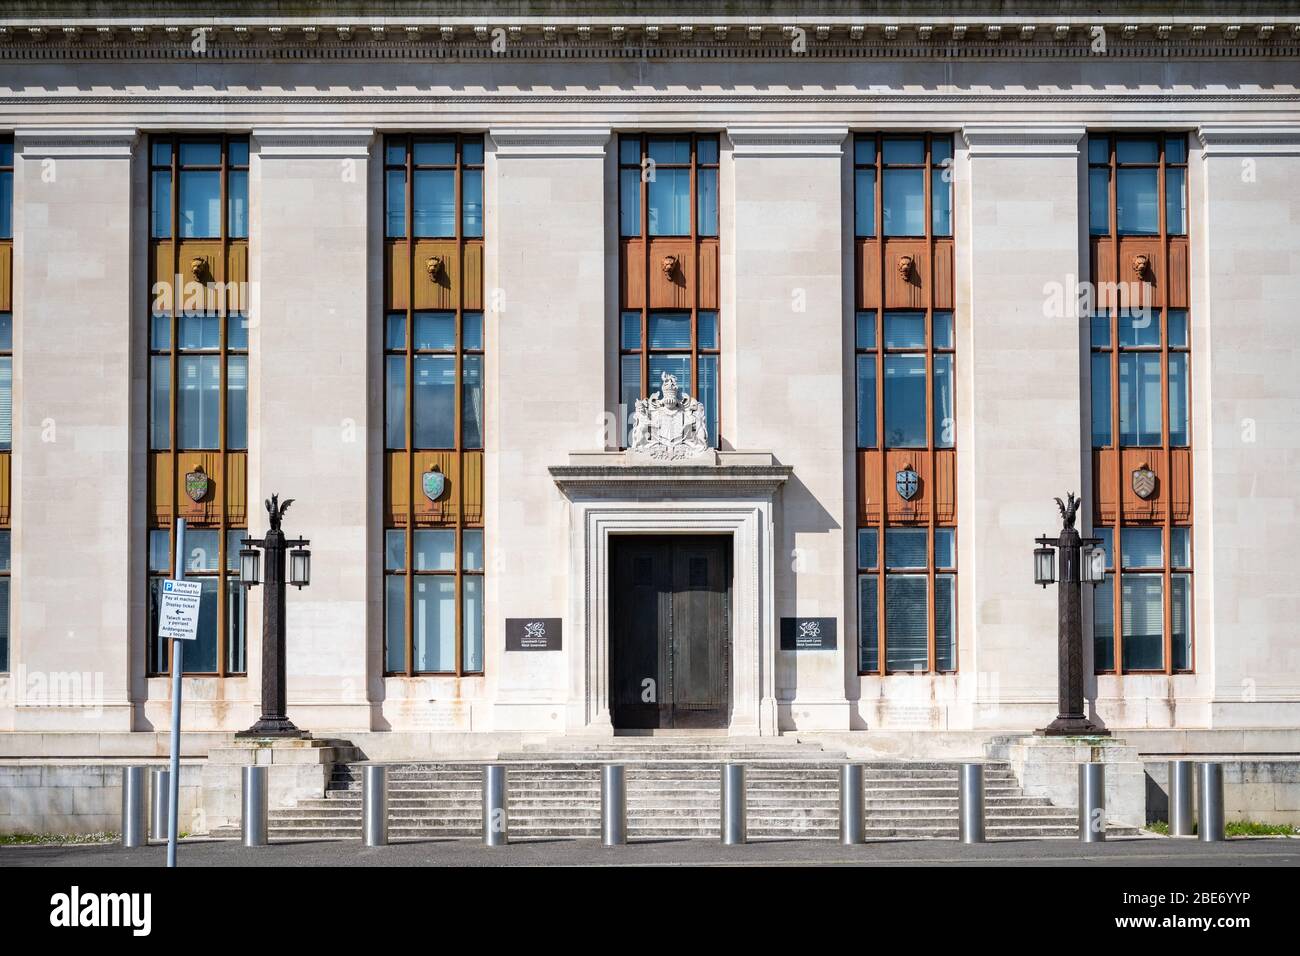 Ein allgemeiner Überblick über das Regierungsgebäude der Welsh Assembly in Cardiff, Wales, Großbritannien. Stockfoto